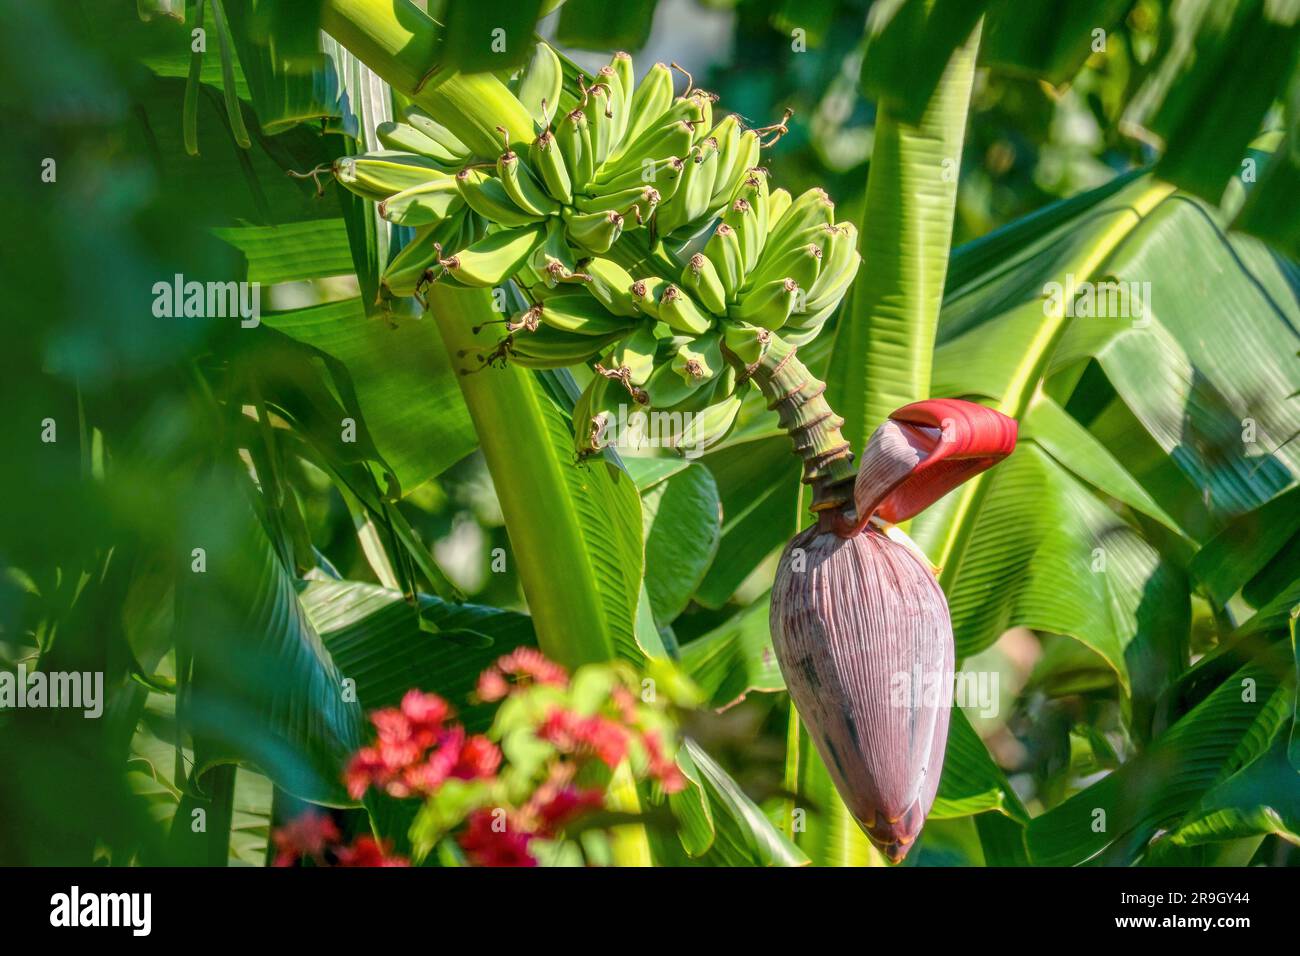 Ein reifender Haufen Mehlbananen, auch bekannt als Bananenkochen, und die große Blume, die am Ende der Spitze wächst. Stockfoto